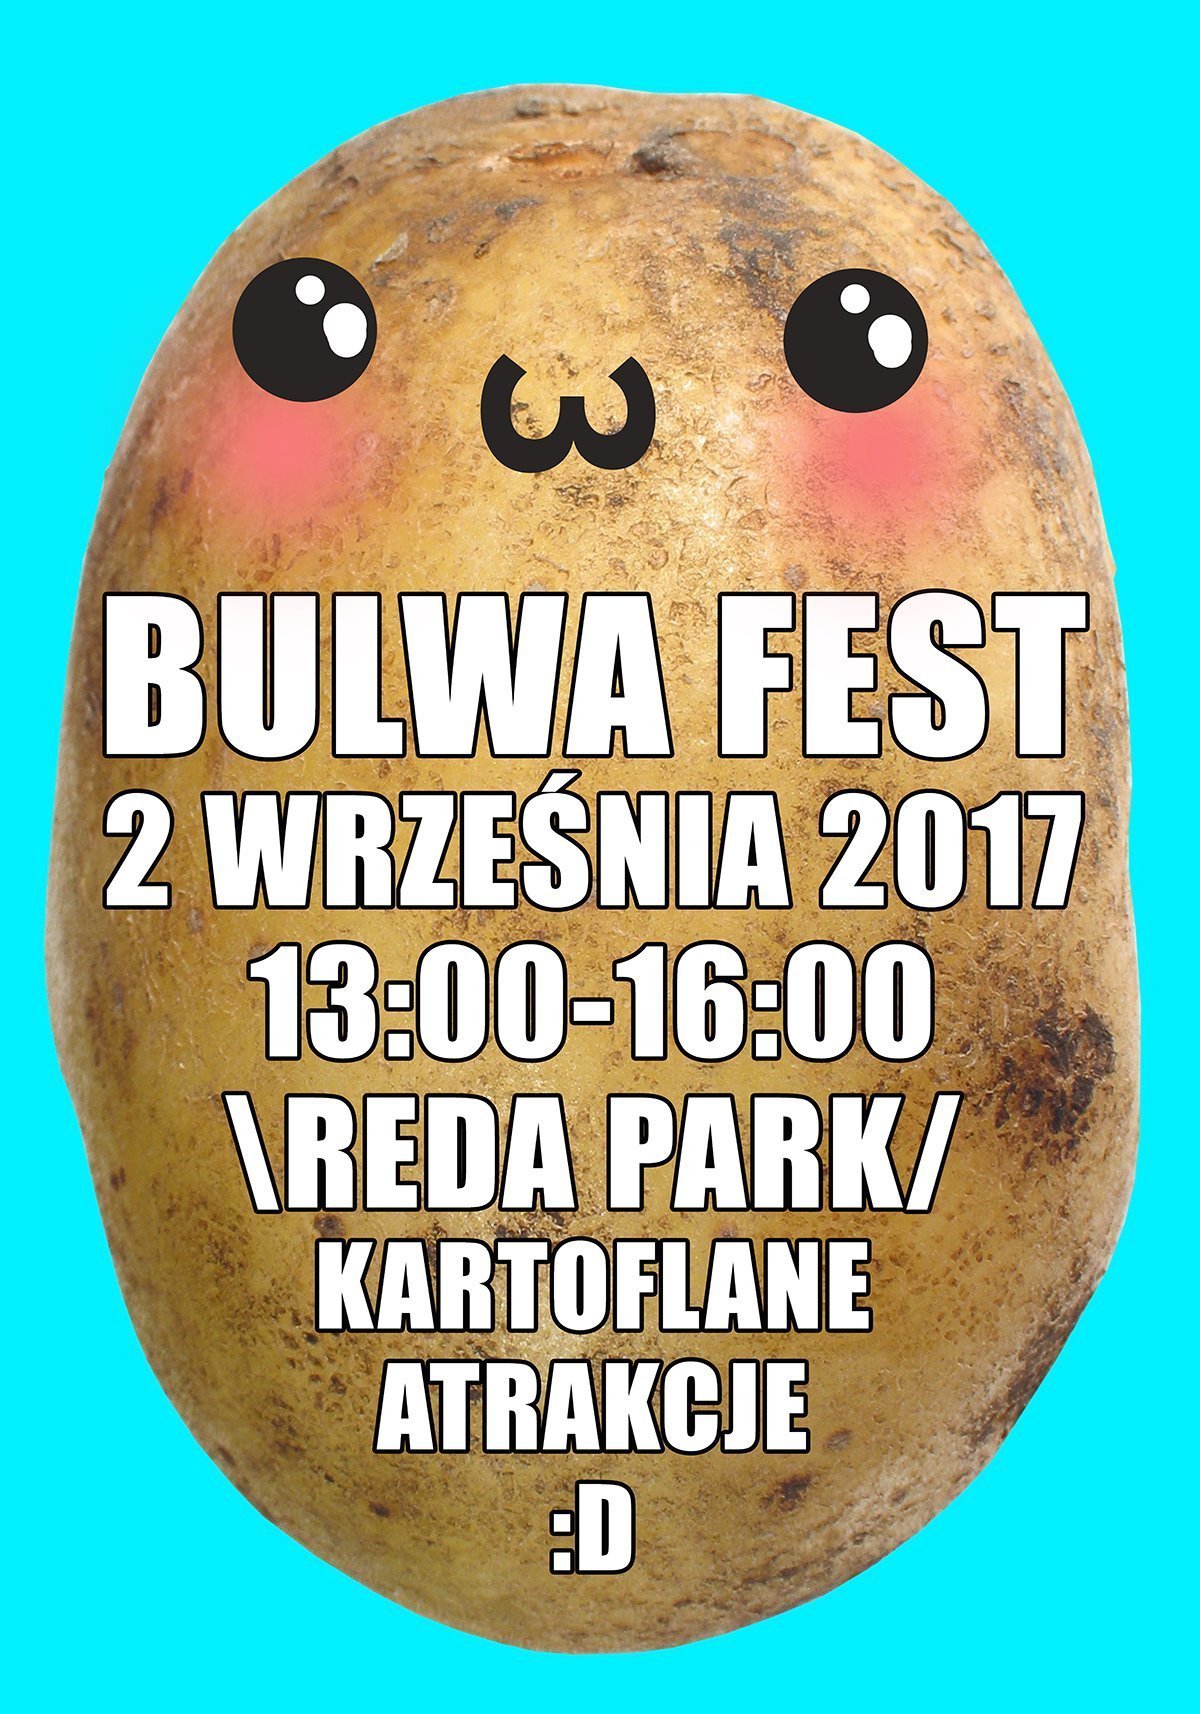 bulwafest-reda1200netver.jpg